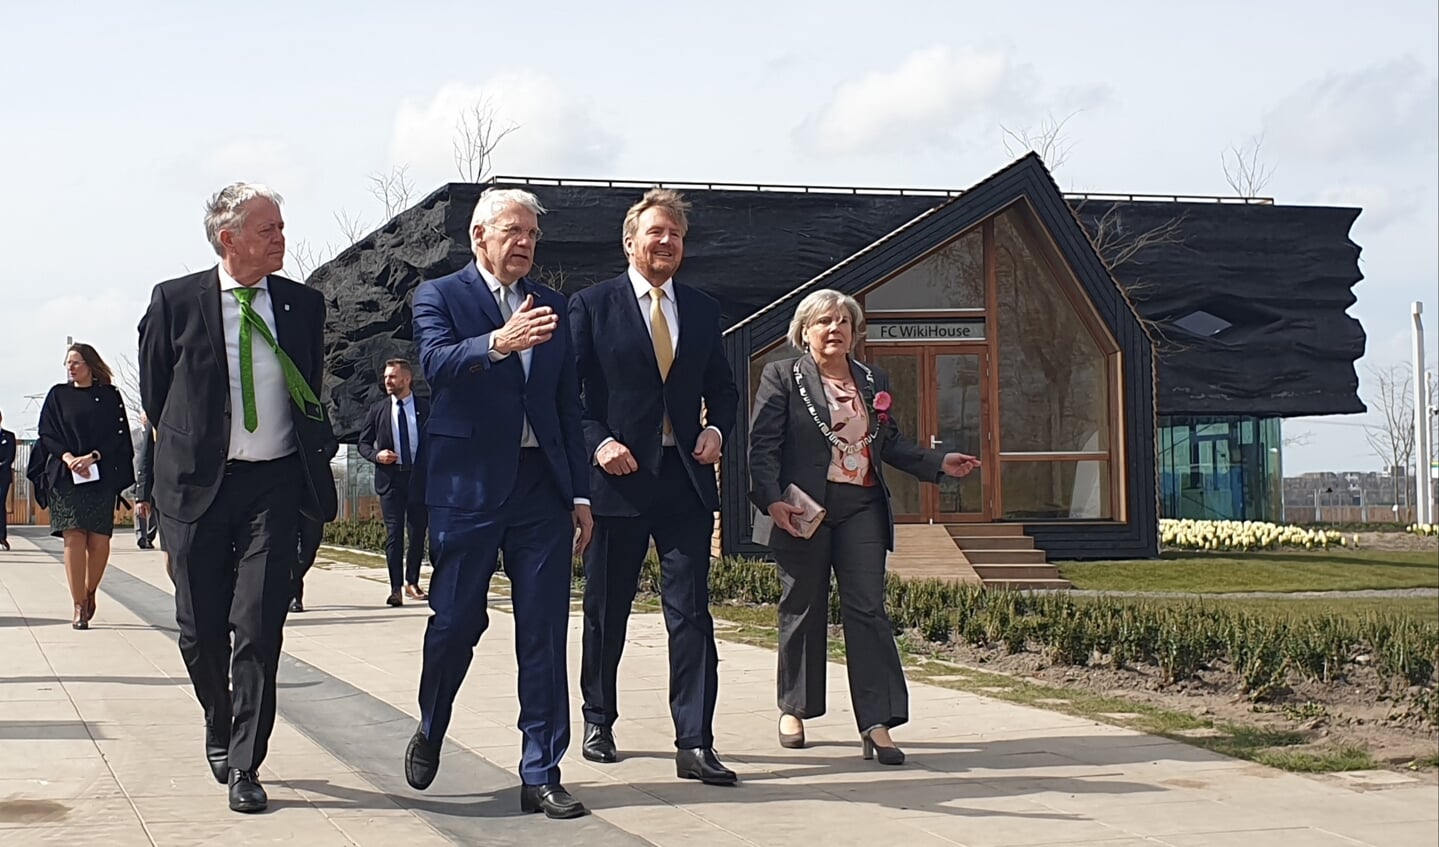 Koning Willem-Alexander tijdens de rondleiding over het Floriadeterrein. Op de achtergrond het Food Forum waar voedselinnovaties uit Flevoland worden gepresenteerd. (Foto: Almere Zaken)